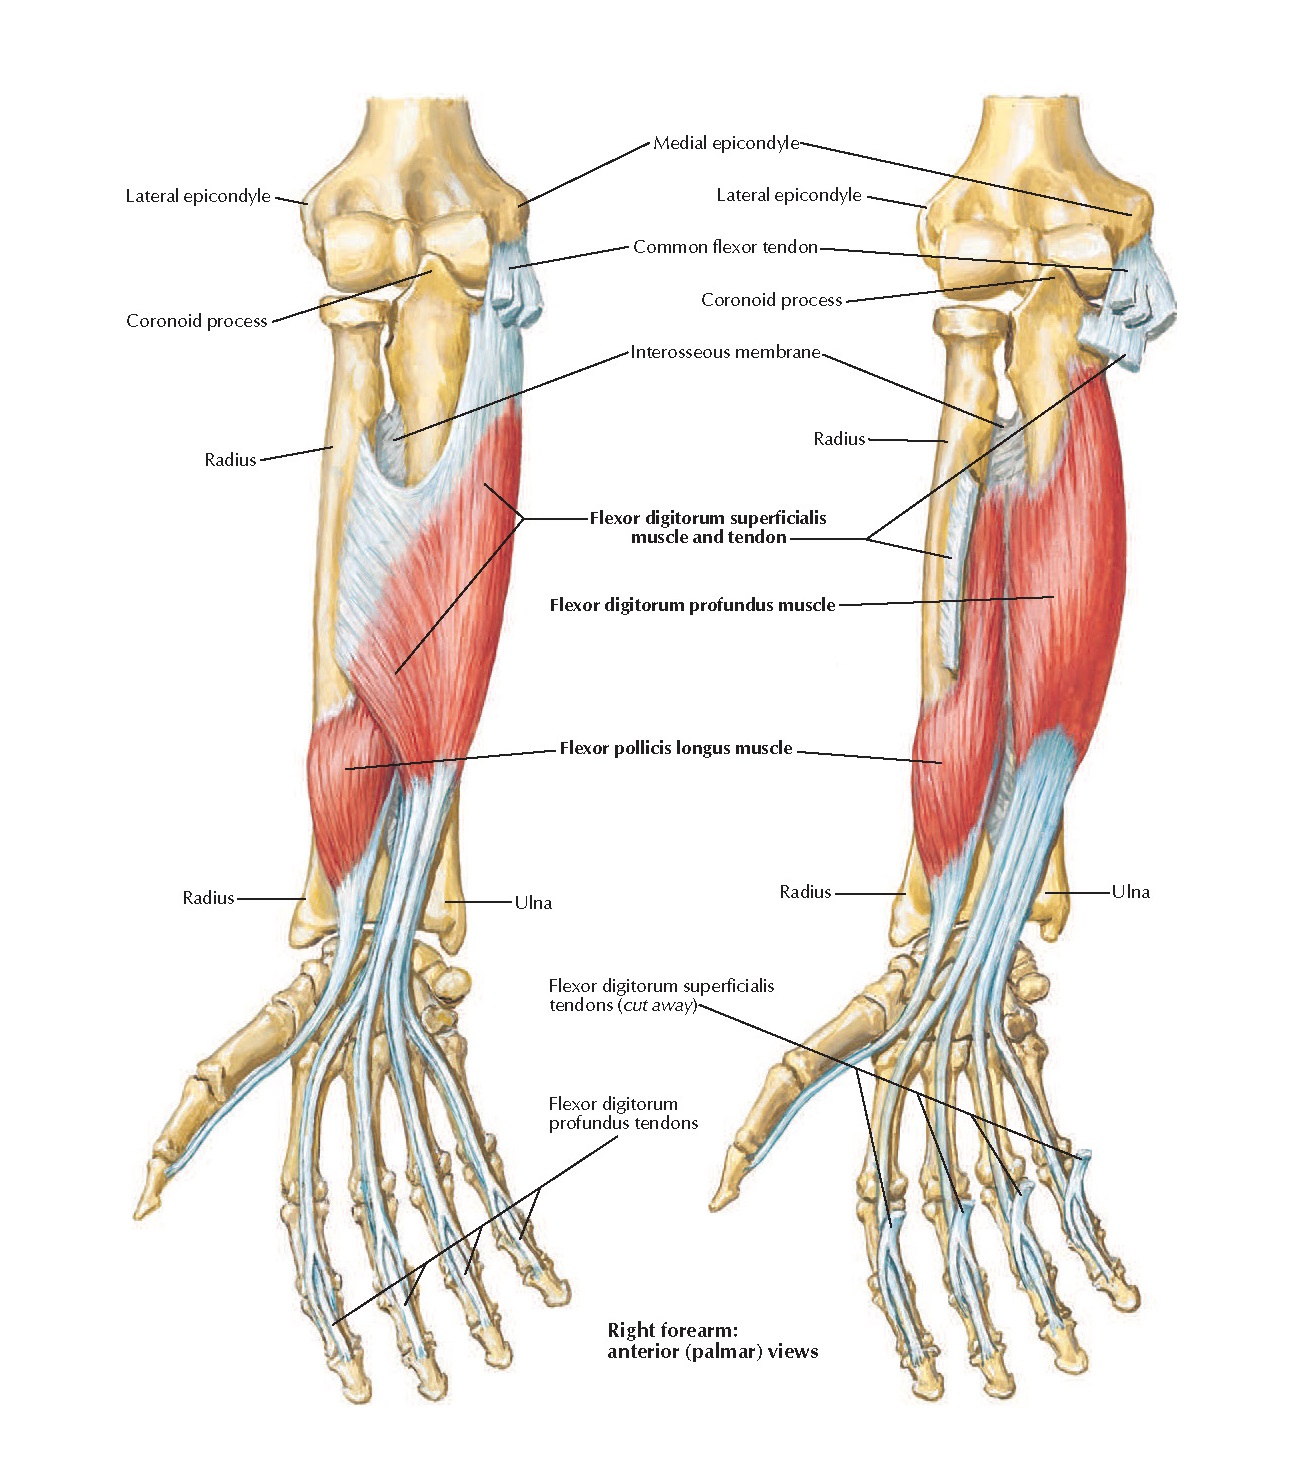 Локтевой сустав мышцы и сухожилия. Мышцы предплечья глубокий сгибатель пальцев. Поверхностные мышцы предплечья сгибатели. Мышцы сгибатели и разгибатели кисти. Мышцы предплечья Неттер.